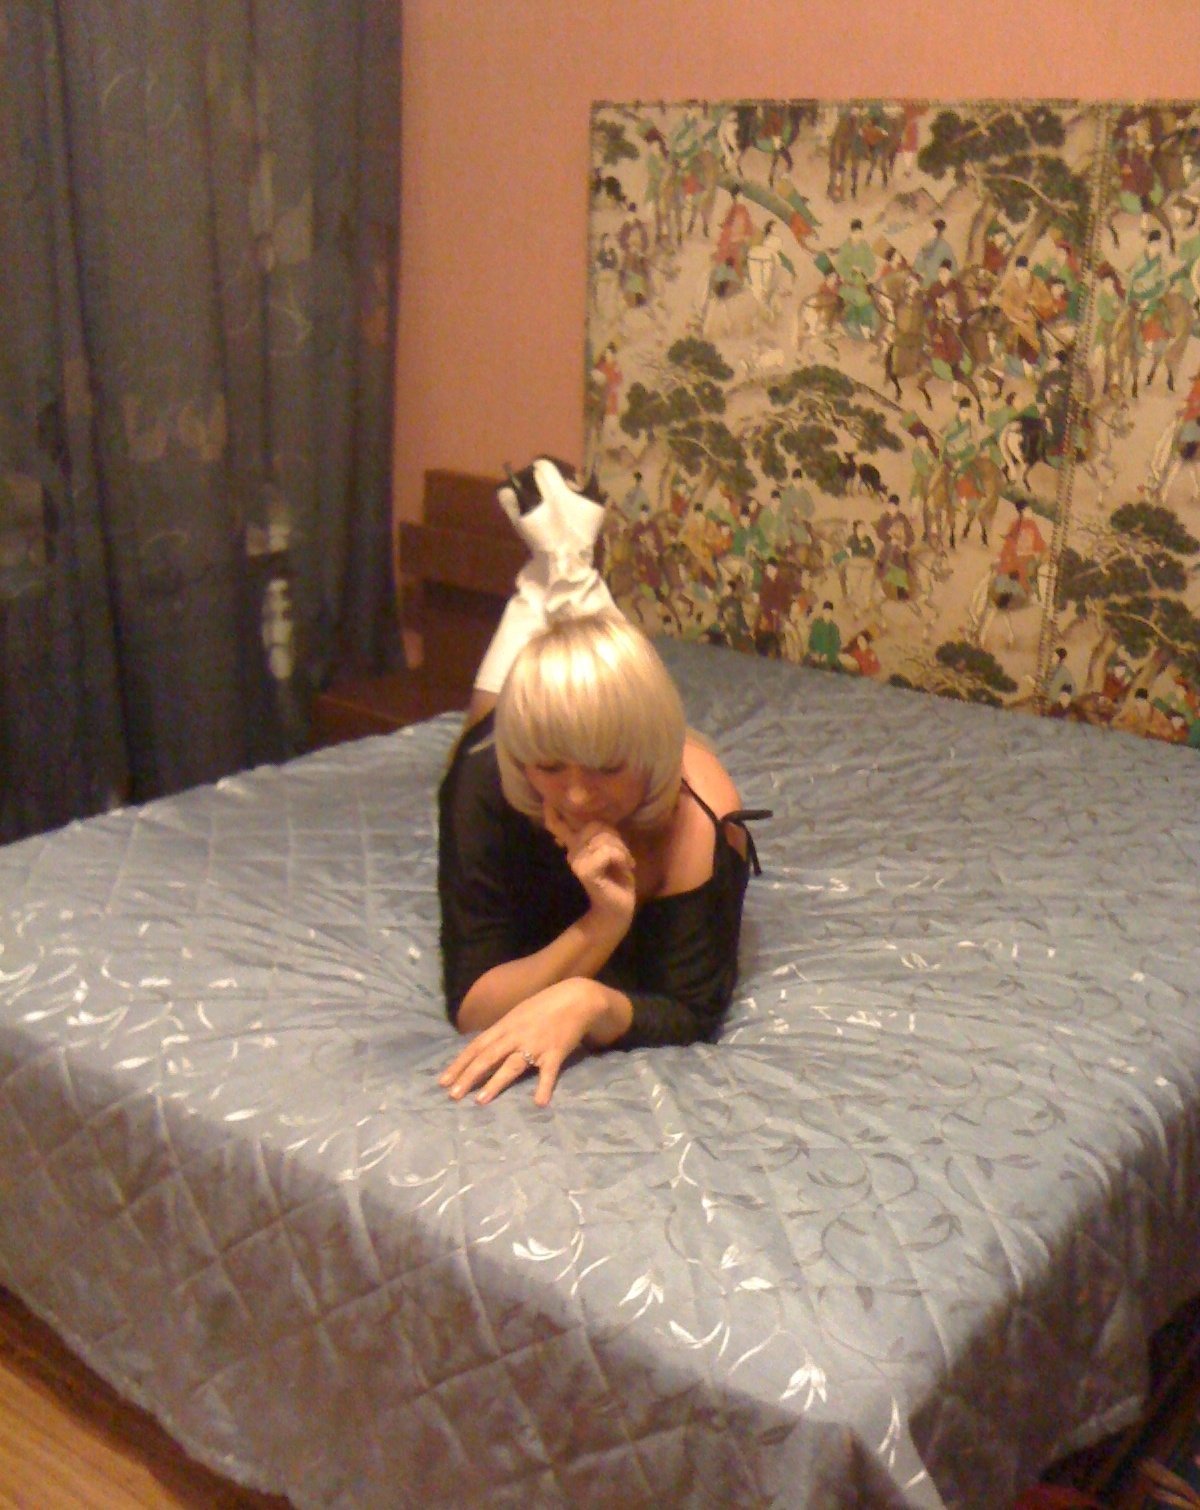 Шлюха индивидуалка Кира Блондинка c 3 размером груди у метро Чернышевская Питер Фото - 5